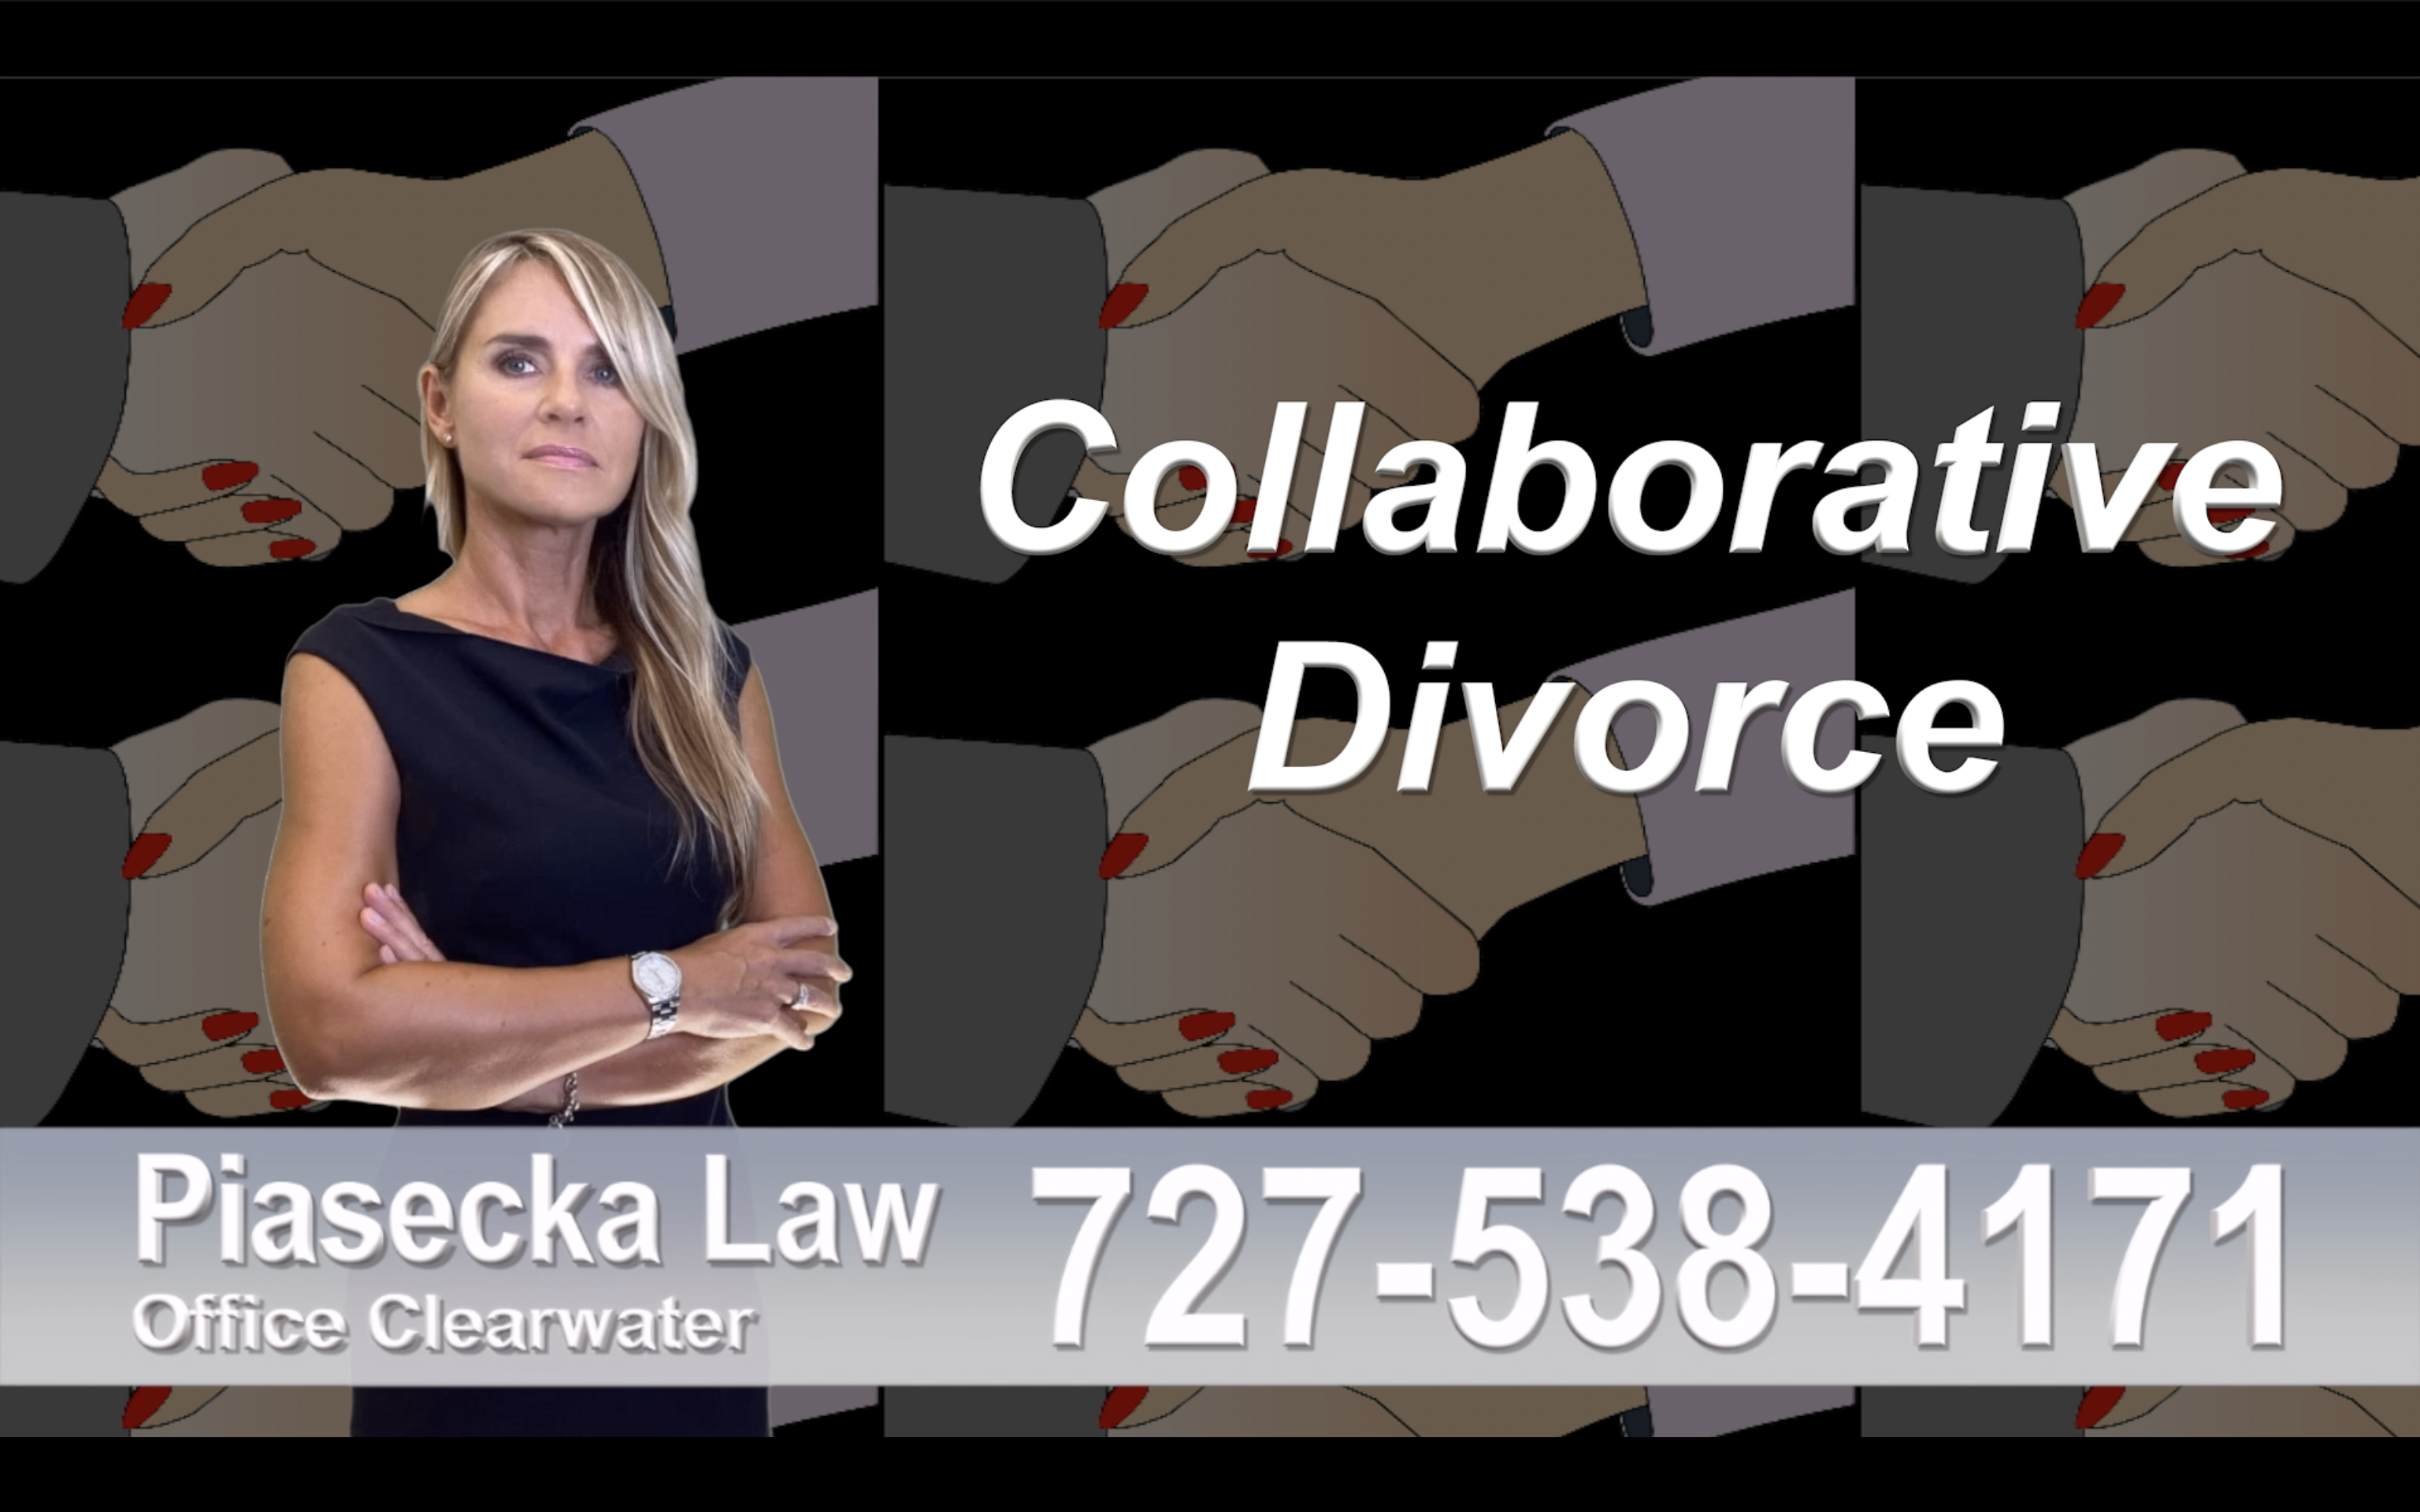 Tampa Collaborative, Divorce, Attorney, Agnieszka, Piasecka, Prawnik, Rozwodowy, Rozwód, Adwokat, divorce, uncontested, Najlepszy, Best, divorce, attorney